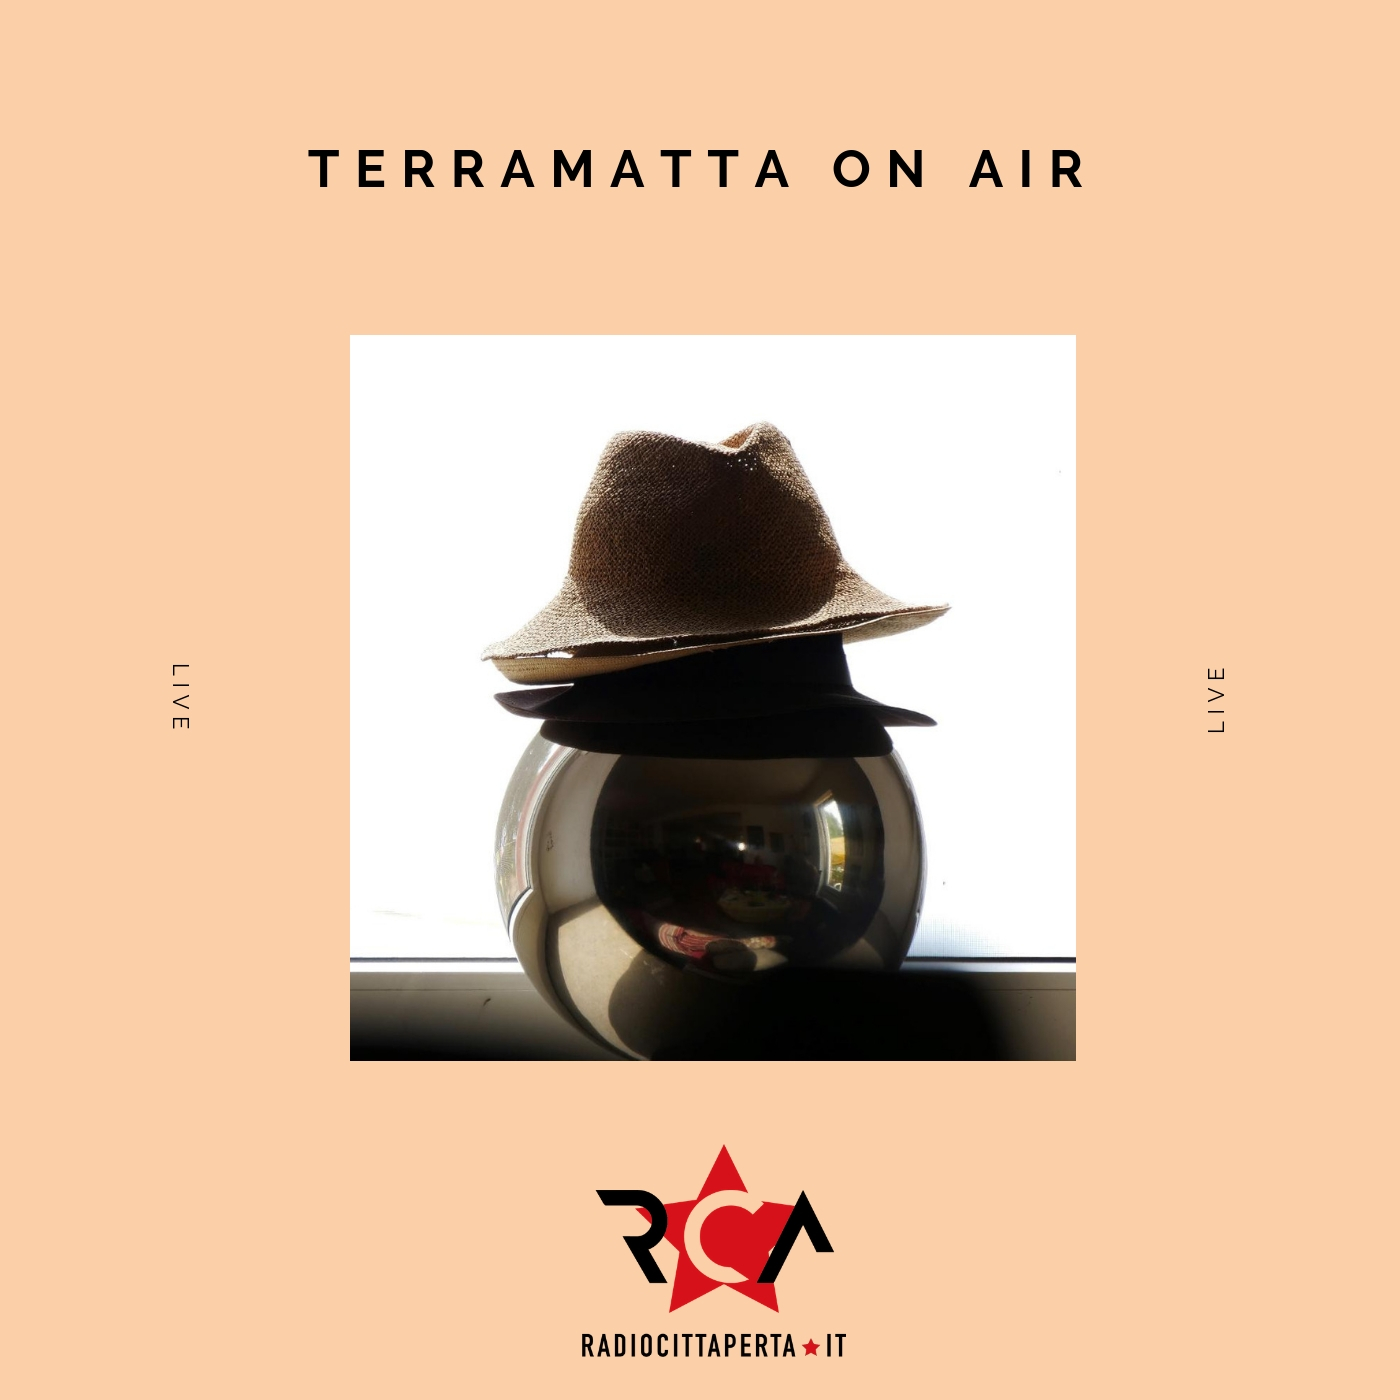 terramatta on air